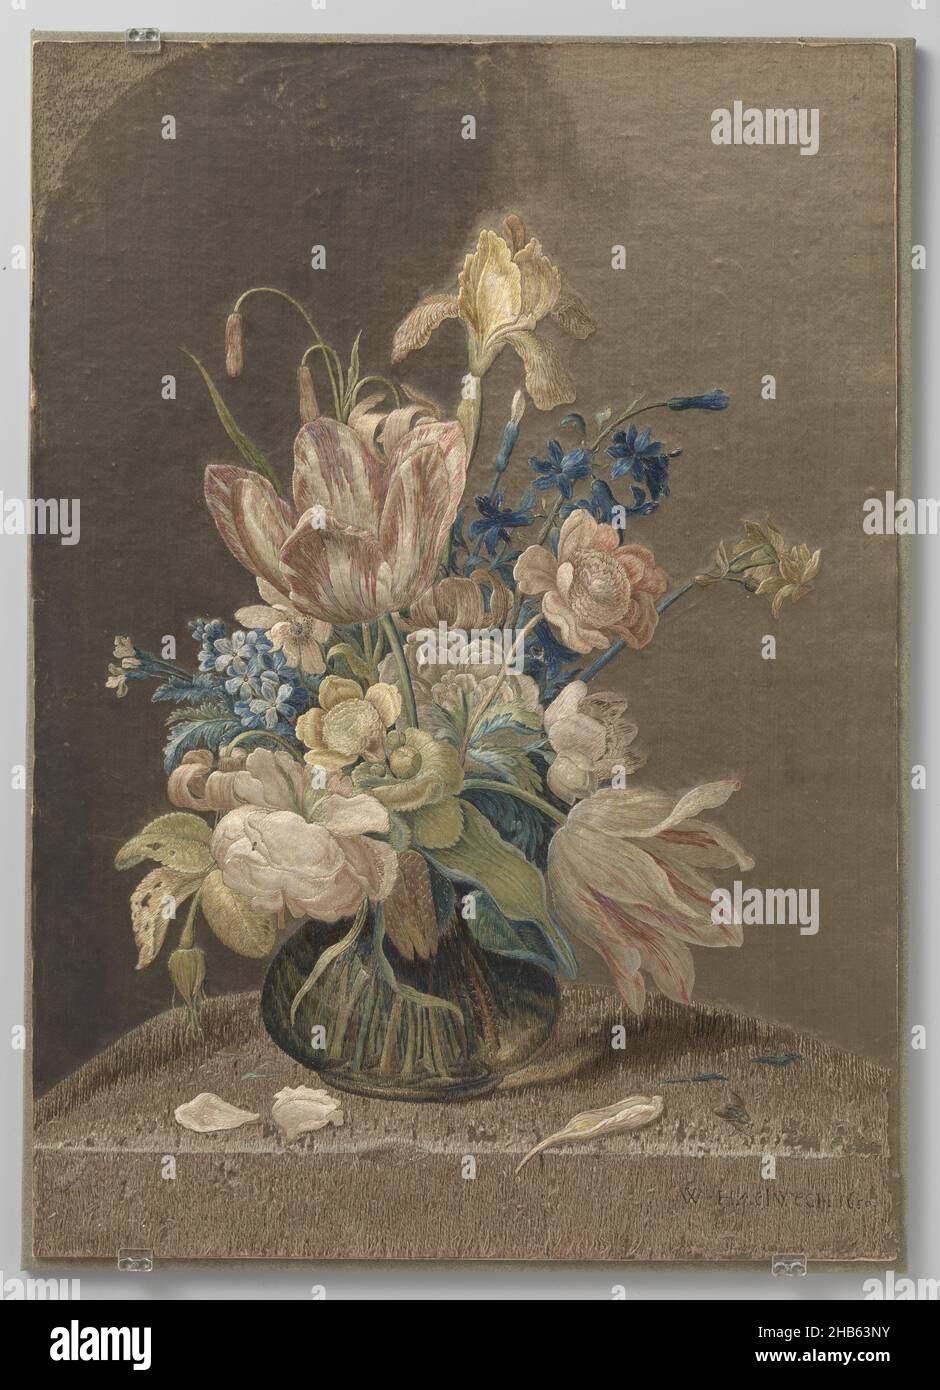 Tavola di seta ricamata multicolore, tavola ricamata raffigurante una bottiglia a fondo largo che contiene un bouquet di fiori. Il vaso è in una nicchia semicircolare. L'opera è firmata in punto di ricamo in basso a destra: W. Haelwegh 1650., costruttore: Wynant Haelwegh, Amsterdam (possibilmente), 1650, seta, ricamo, altezza 51 cm x larghezza 36,5 cm Foto Stock